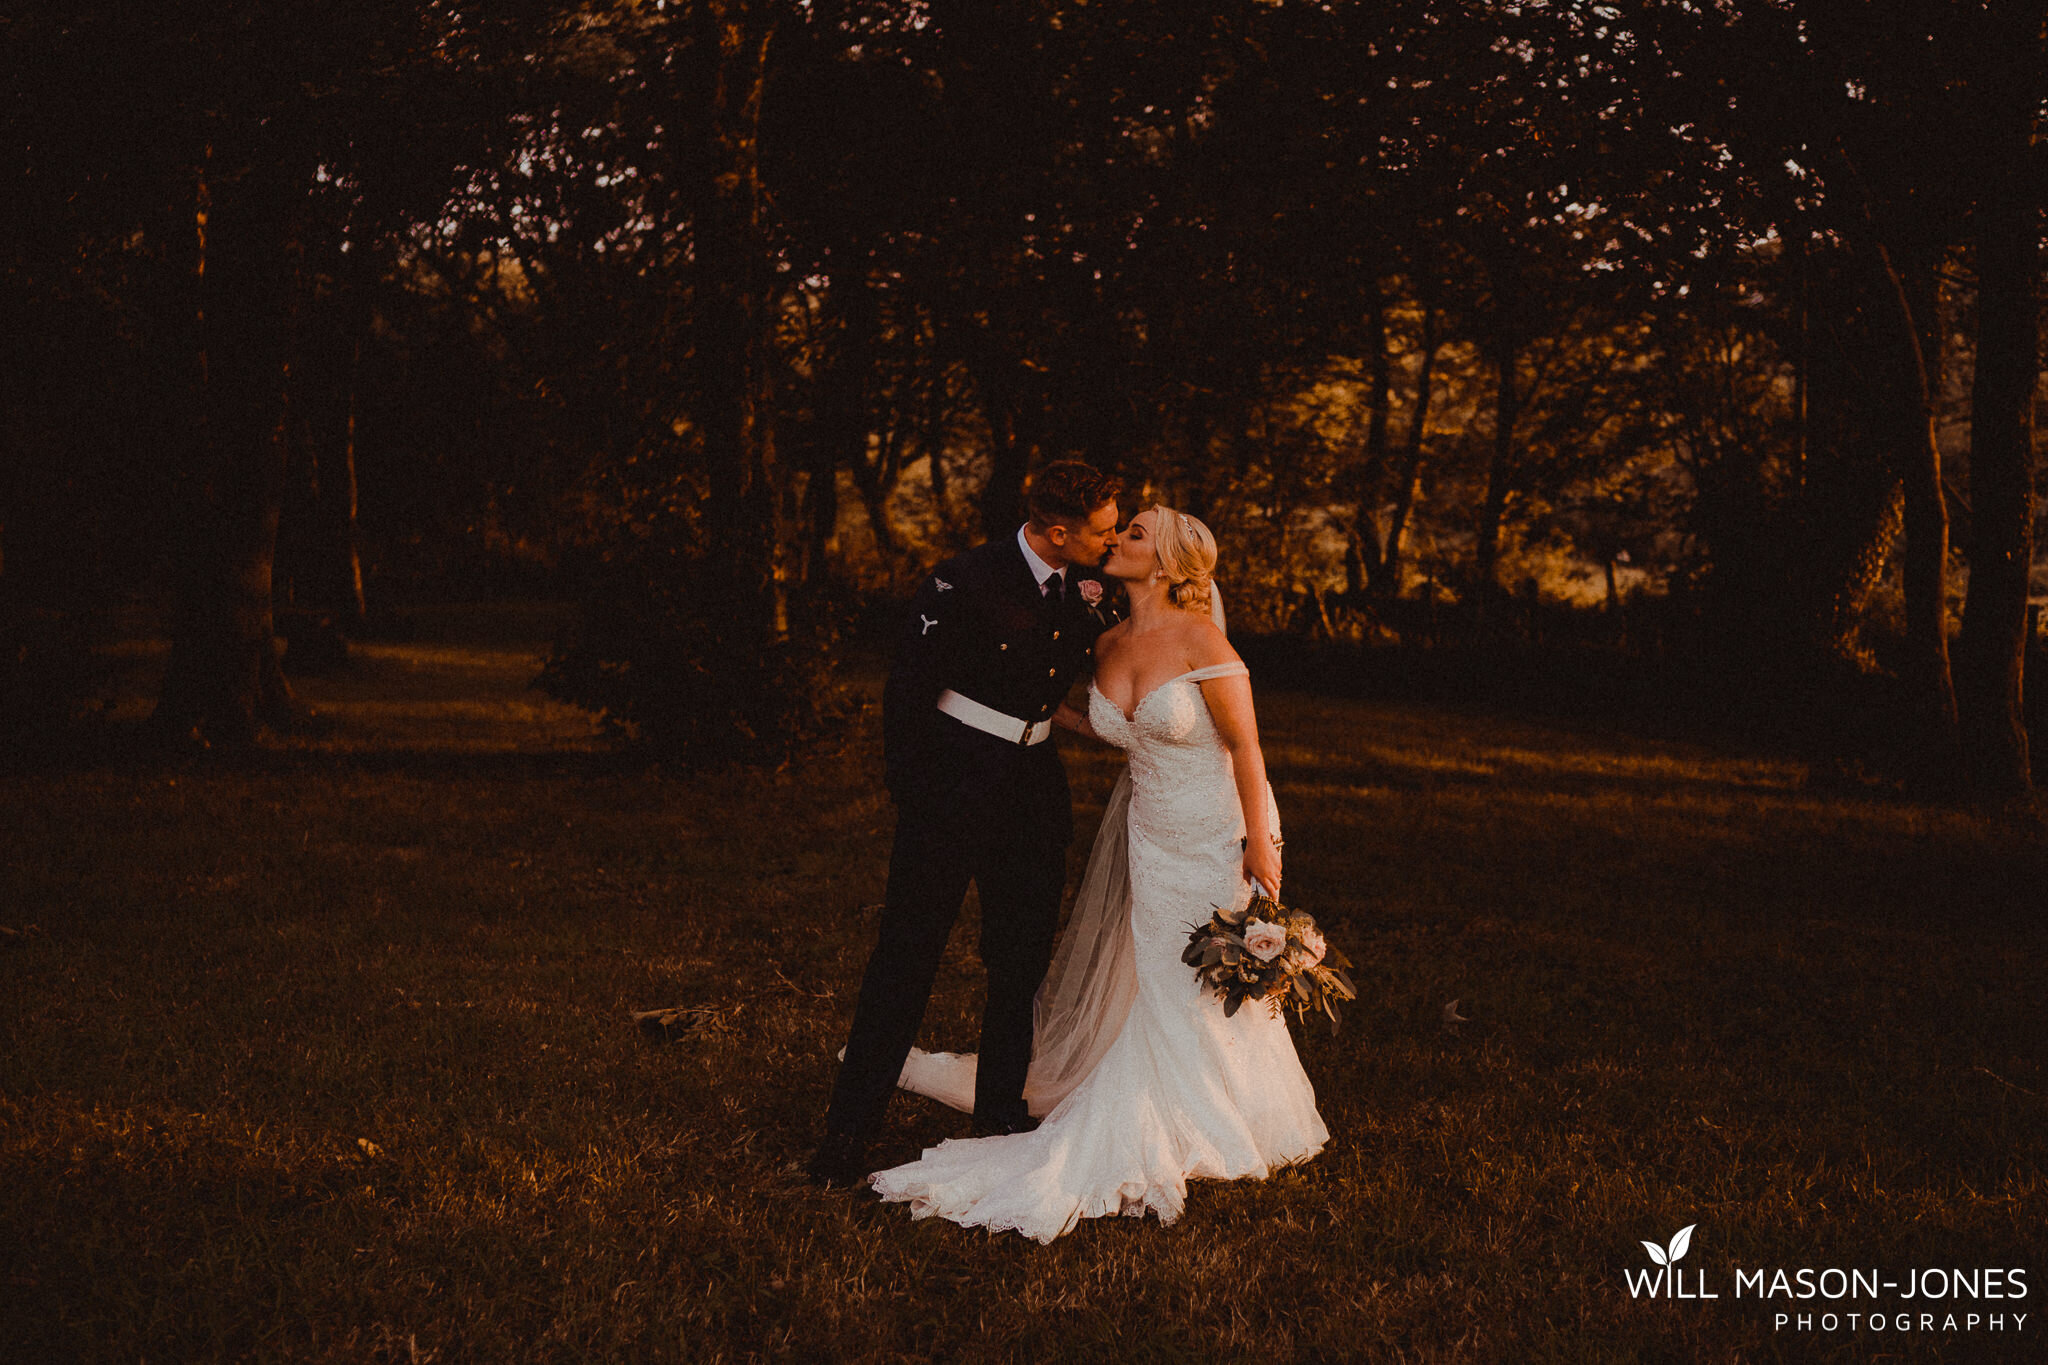  sunset couple photographs gellifawr woodland retreat weddings 